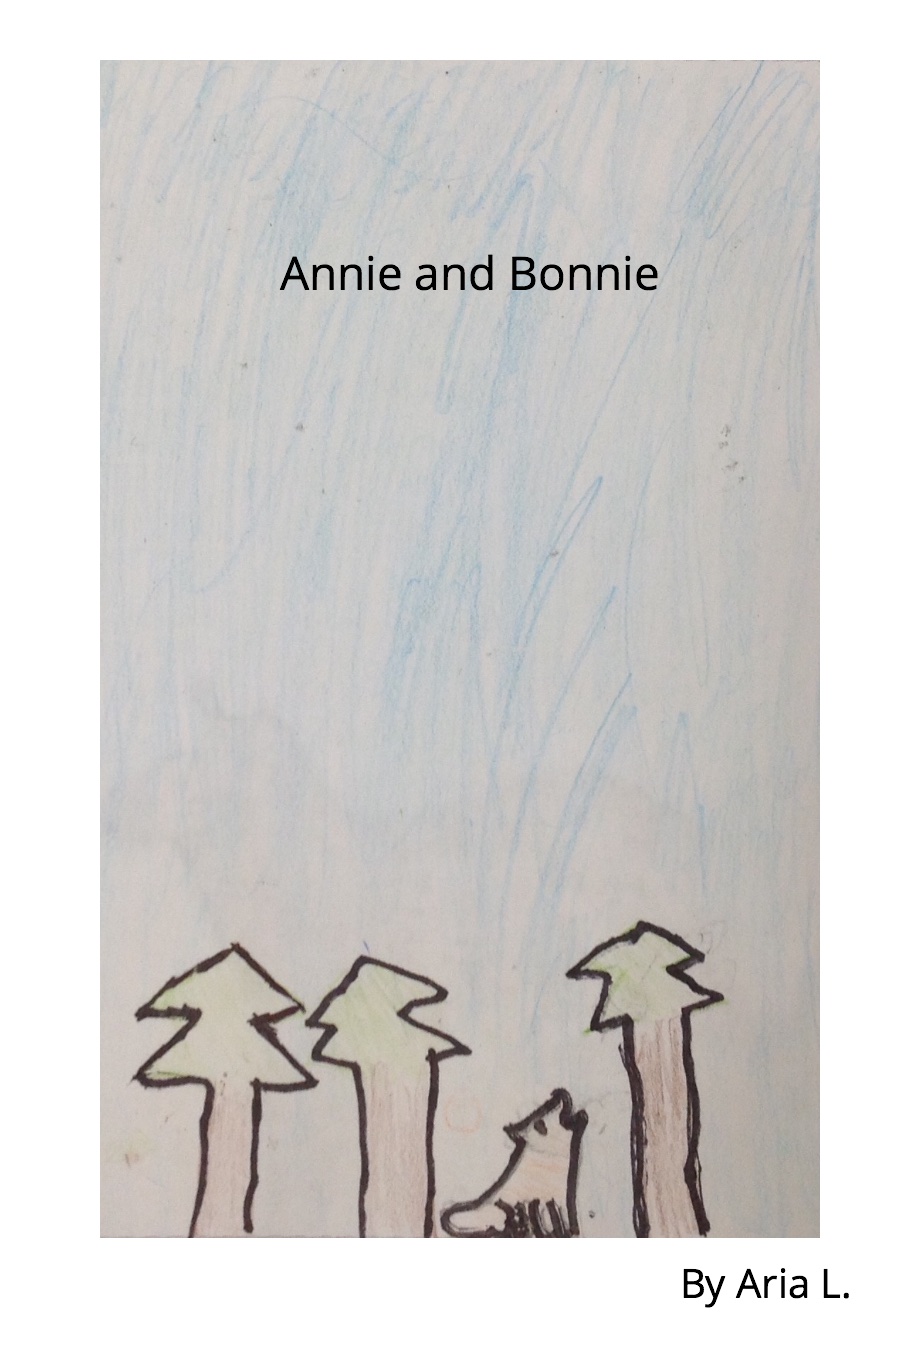 Annie and Bonnie by Aria L